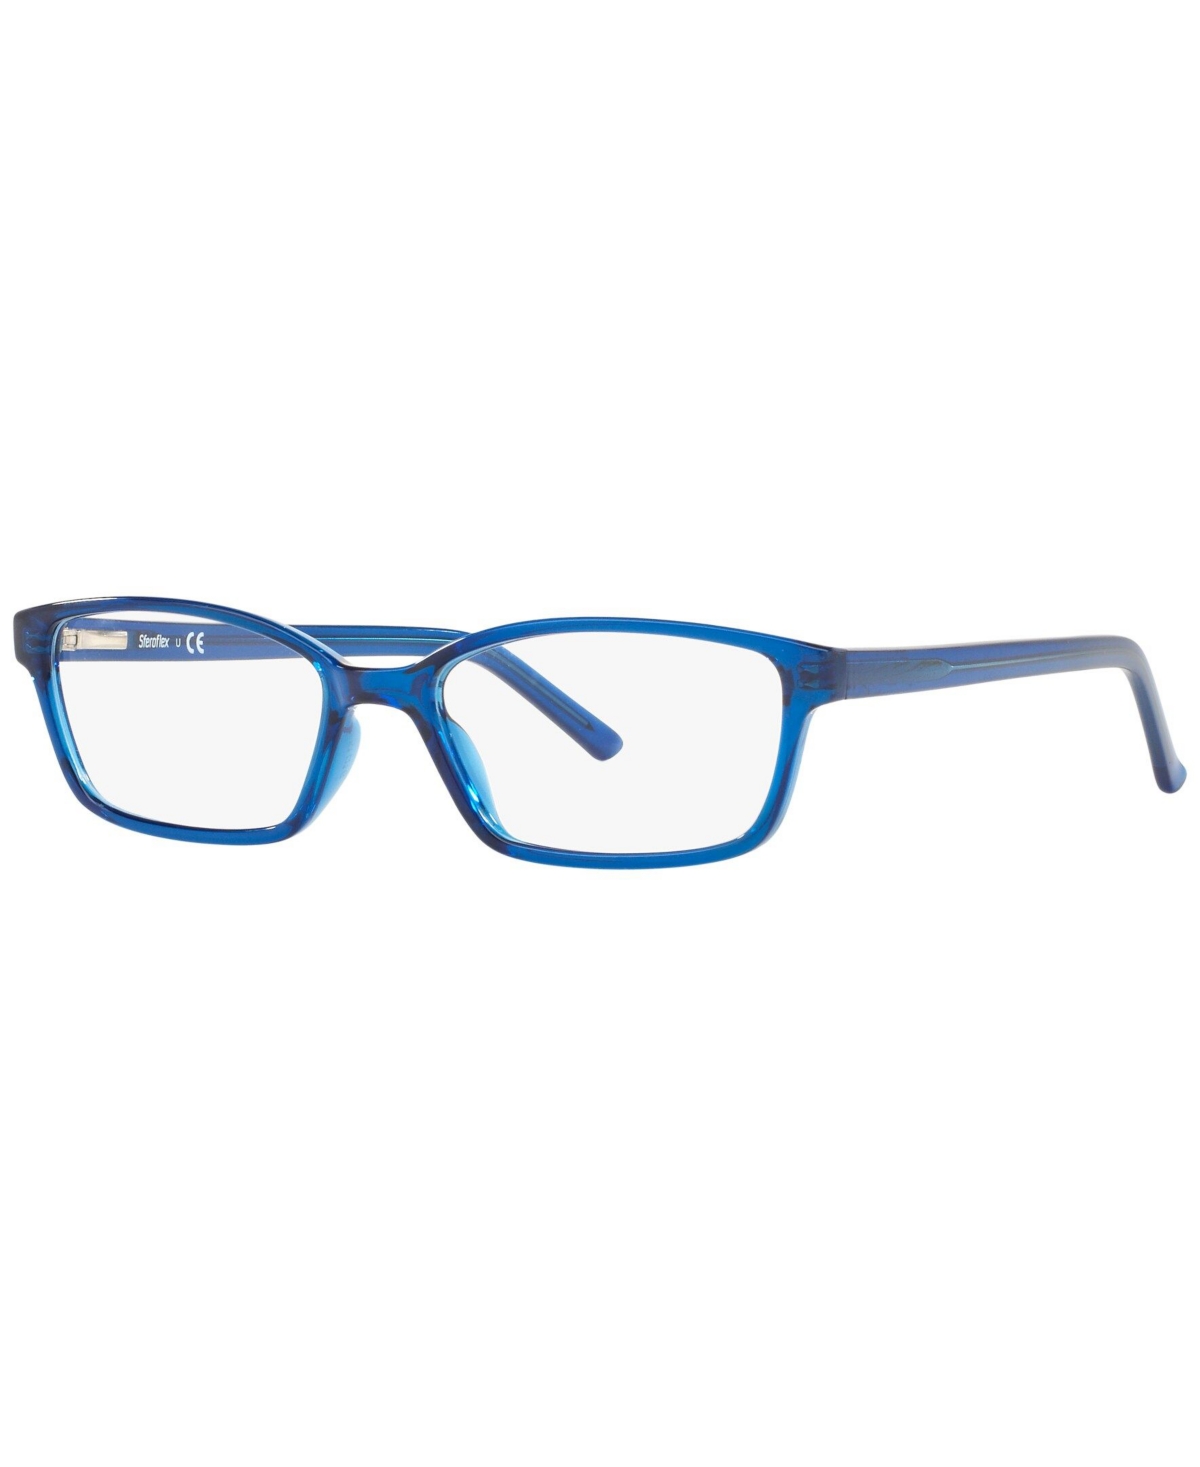 SF1572 Women's Rectangle Eyeglasses - Blue